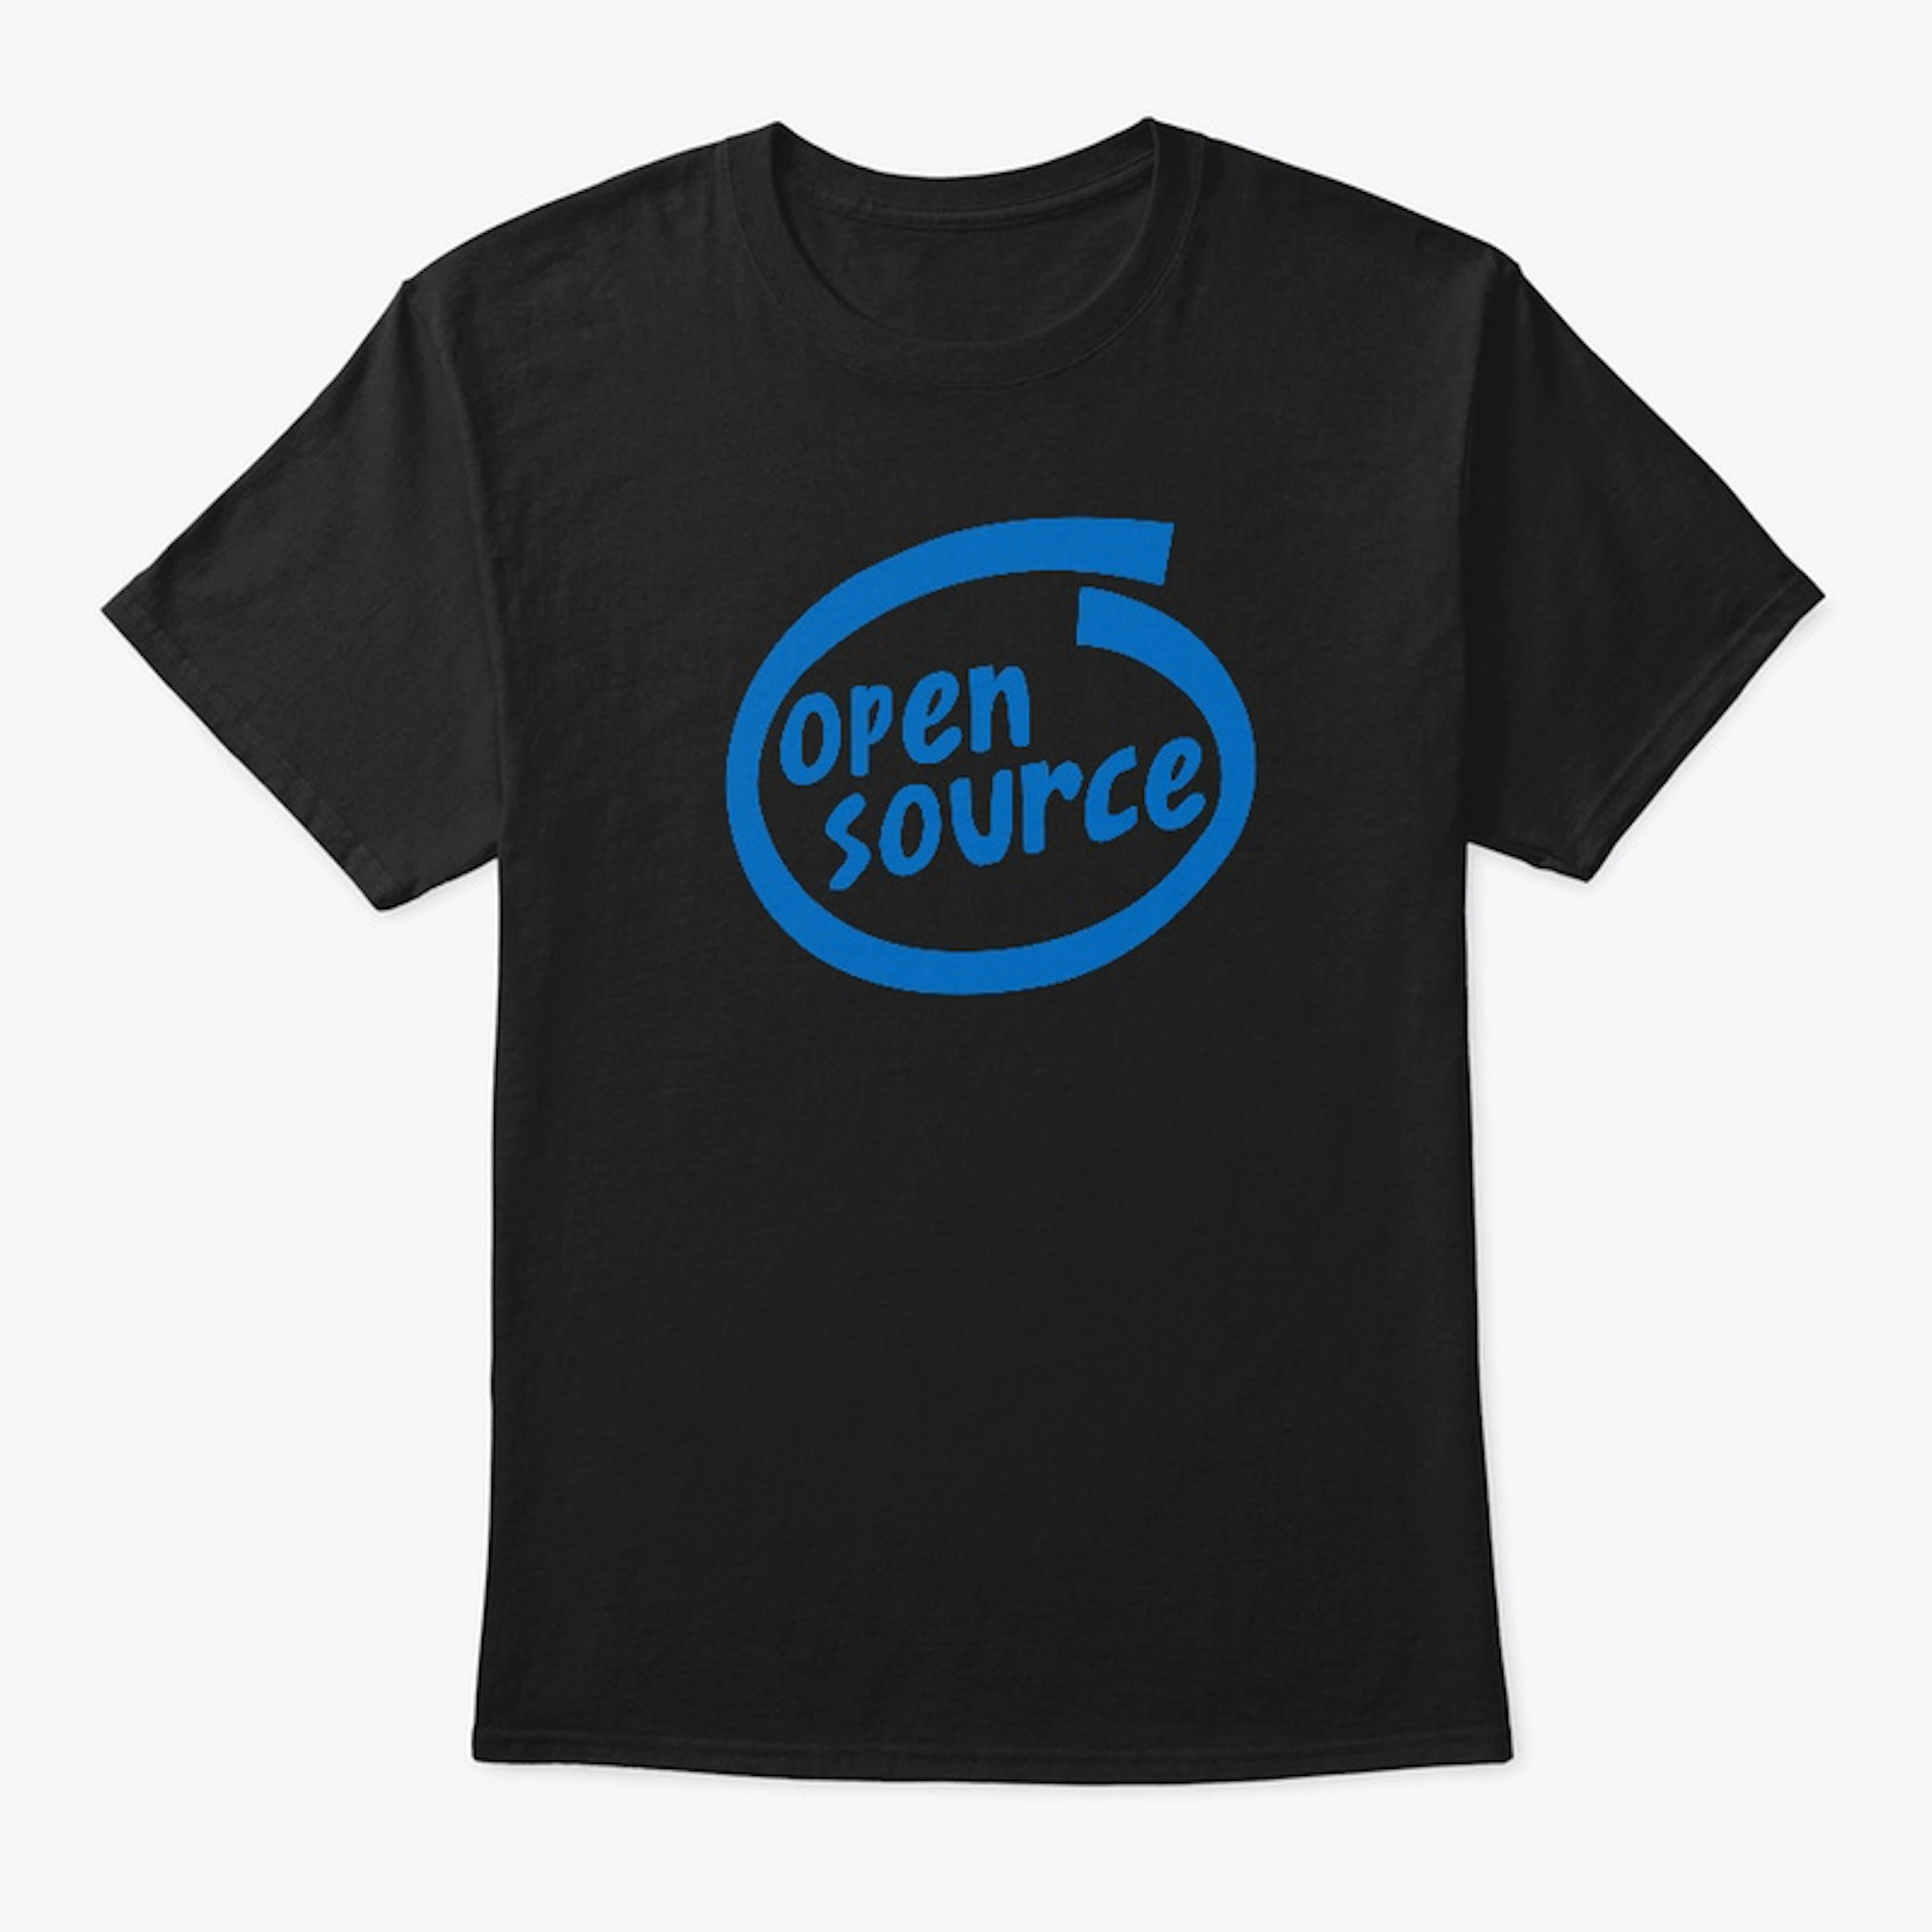 Open Source Inside